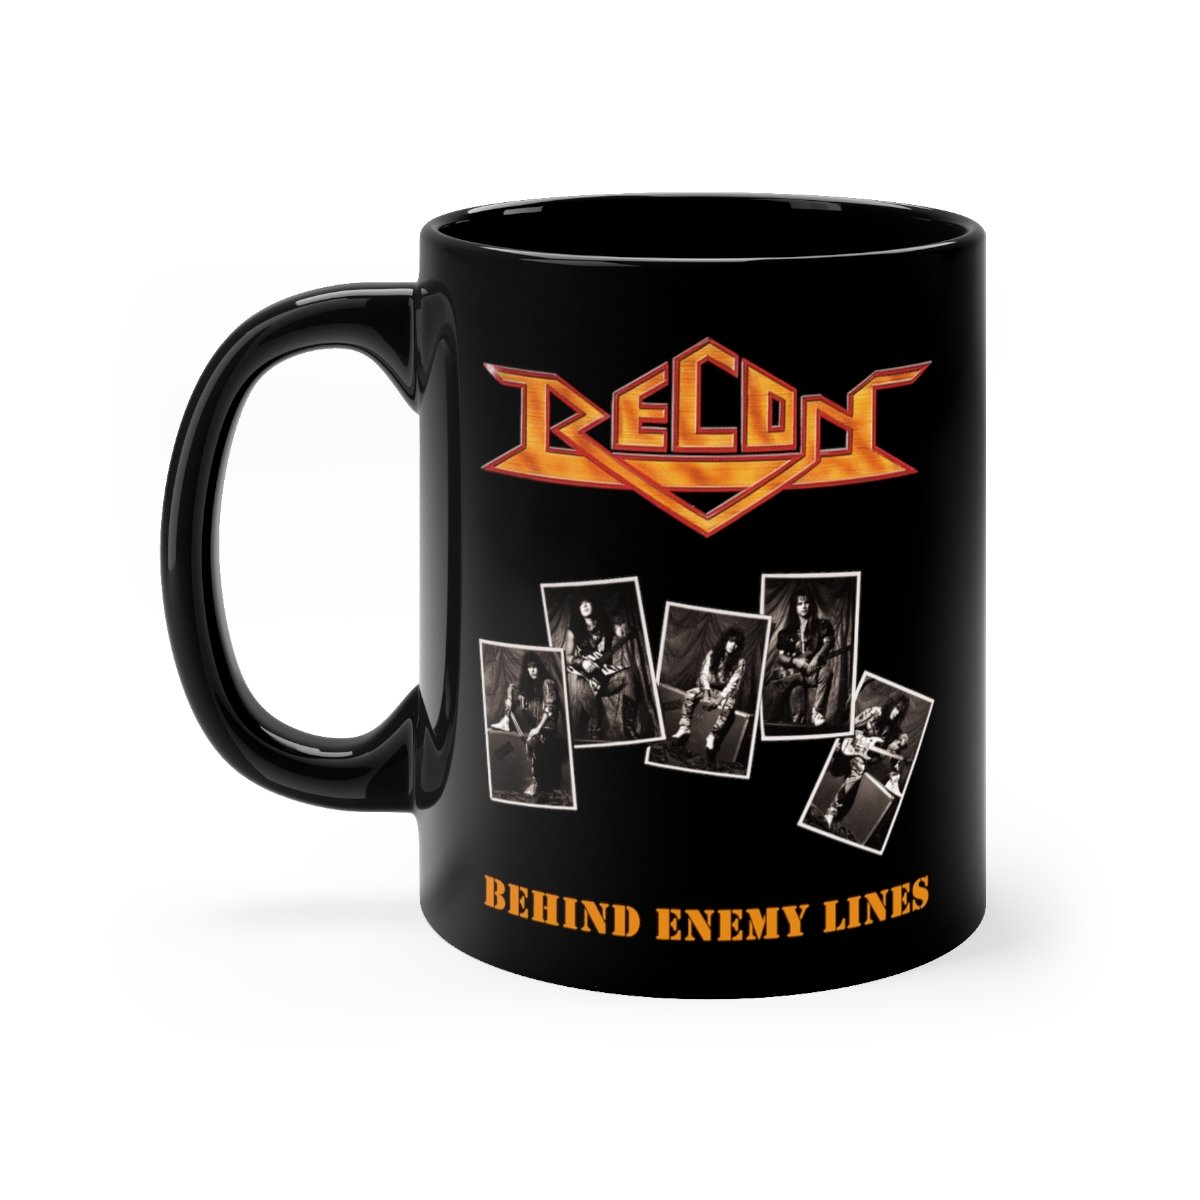 Recon – Behind Enemy Lines Black mug 11oz